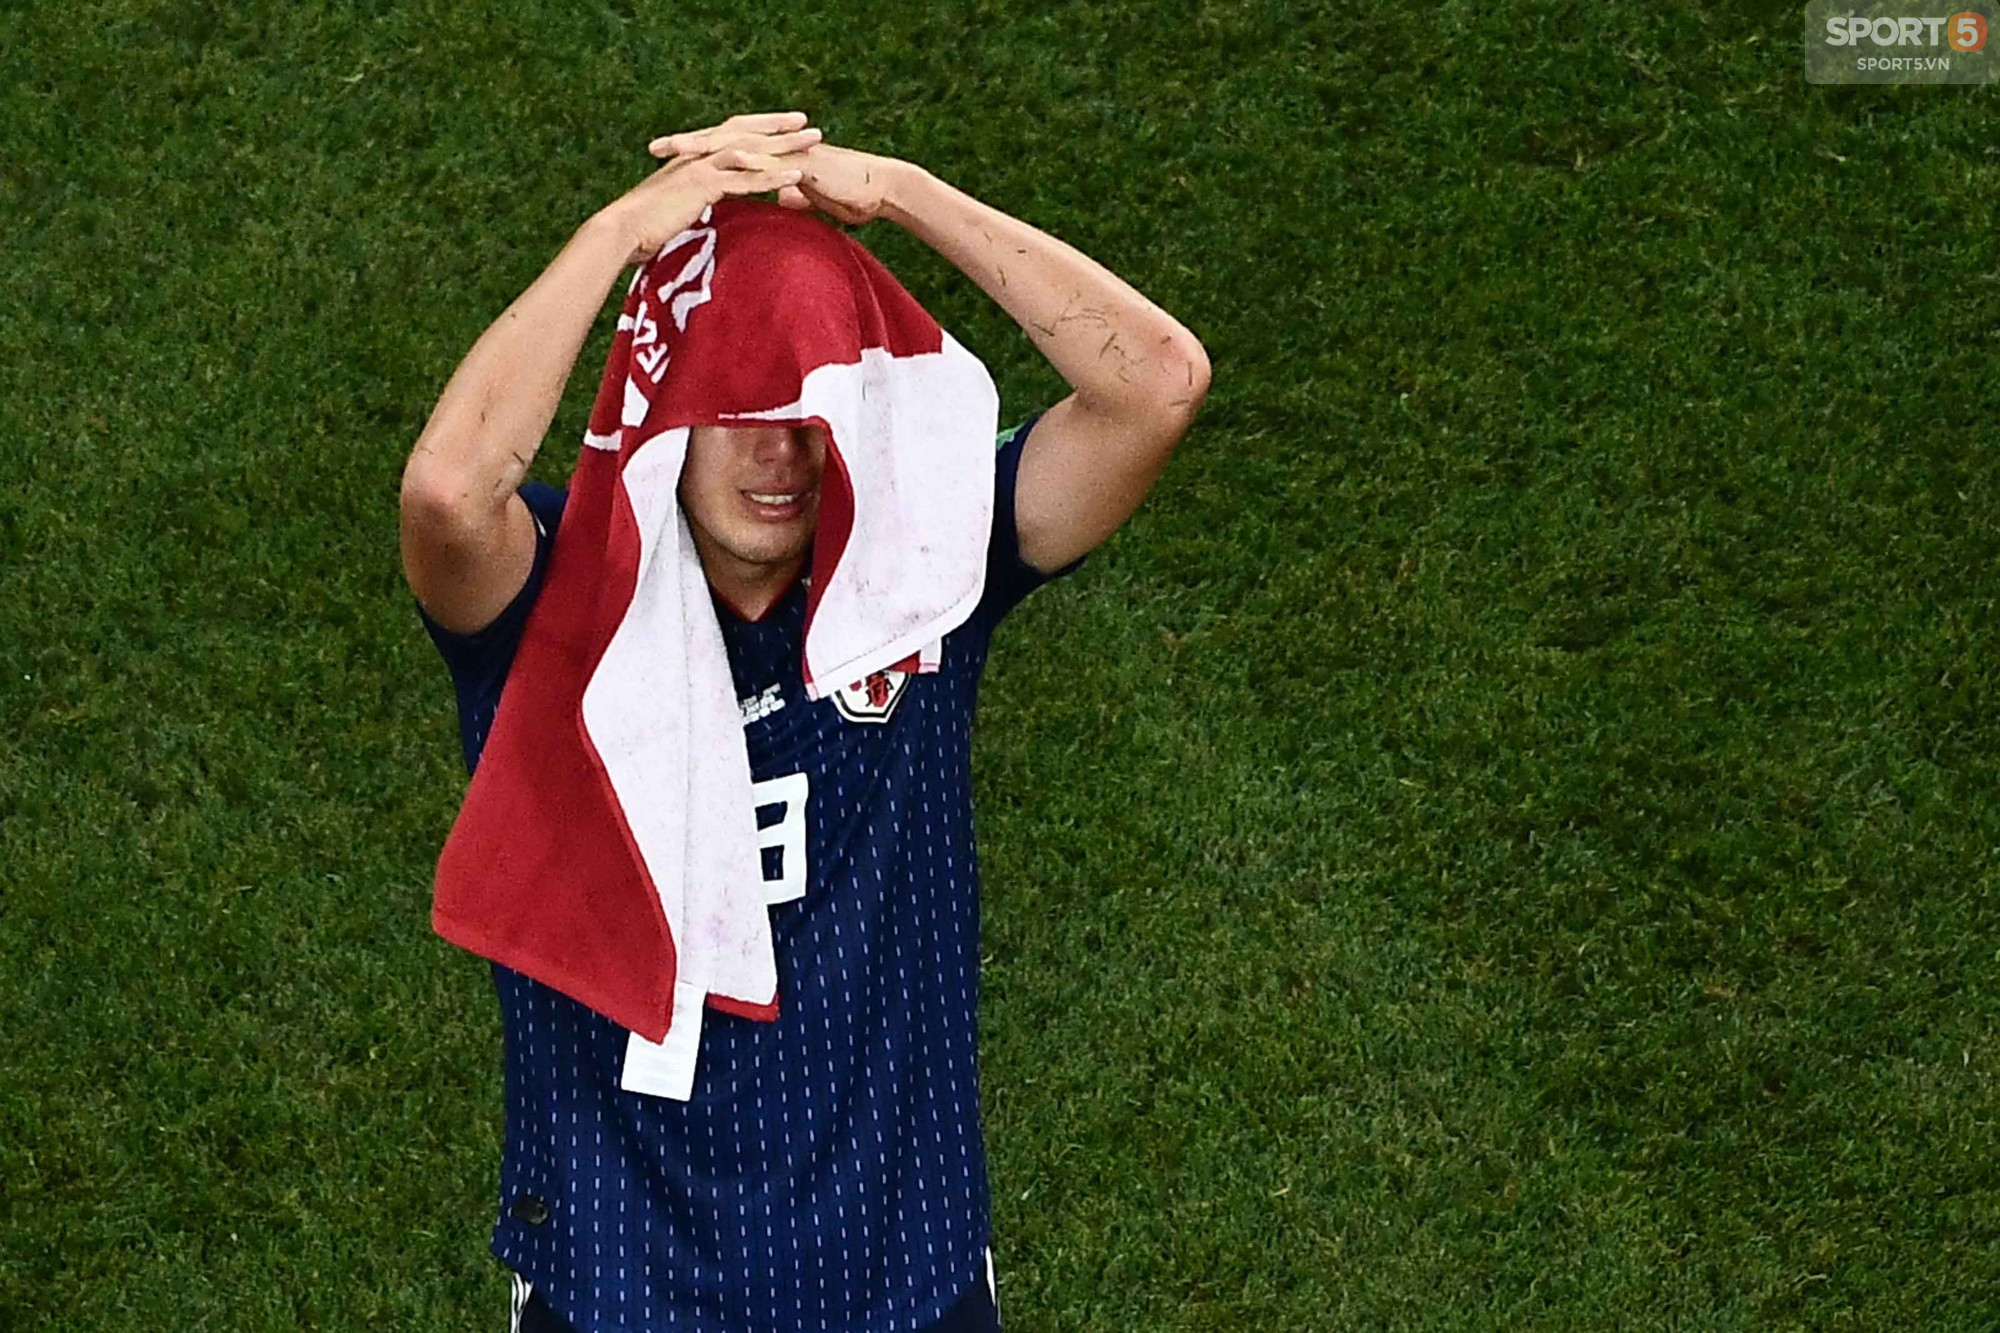 Cầu thủ Nhật Bản đổ gục, fan òa khóc sau trận thua ngược Bỉ - Ảnh 6.